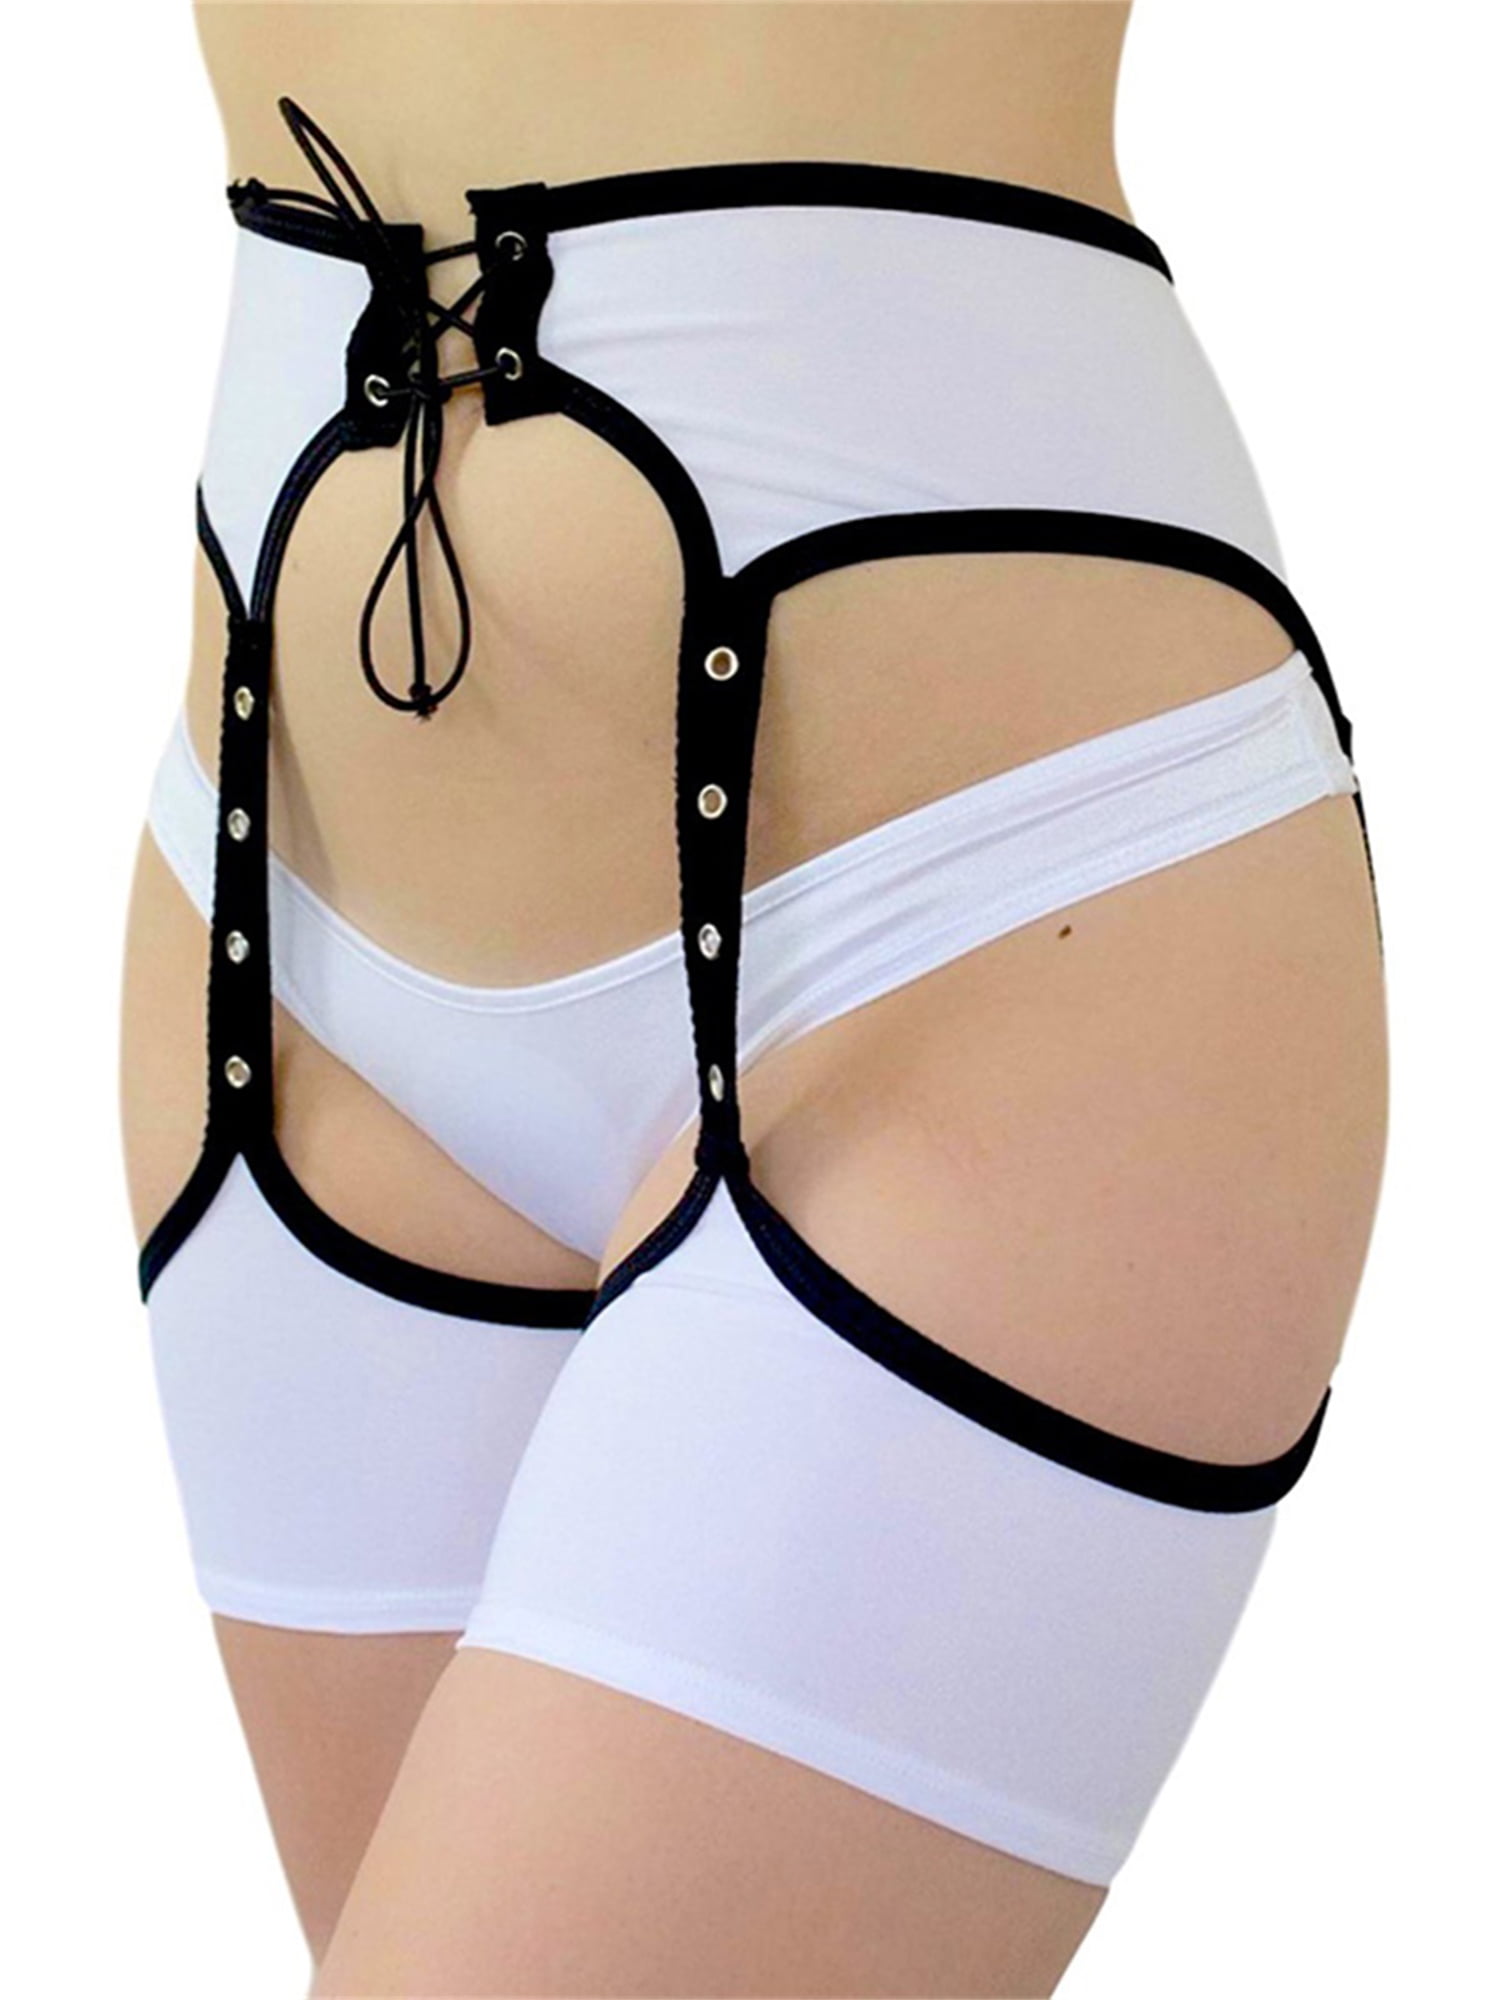 S-3XL High Waist Open Crotch Pants Girdle Garter belt w/ 6 Straps Suspender Belt